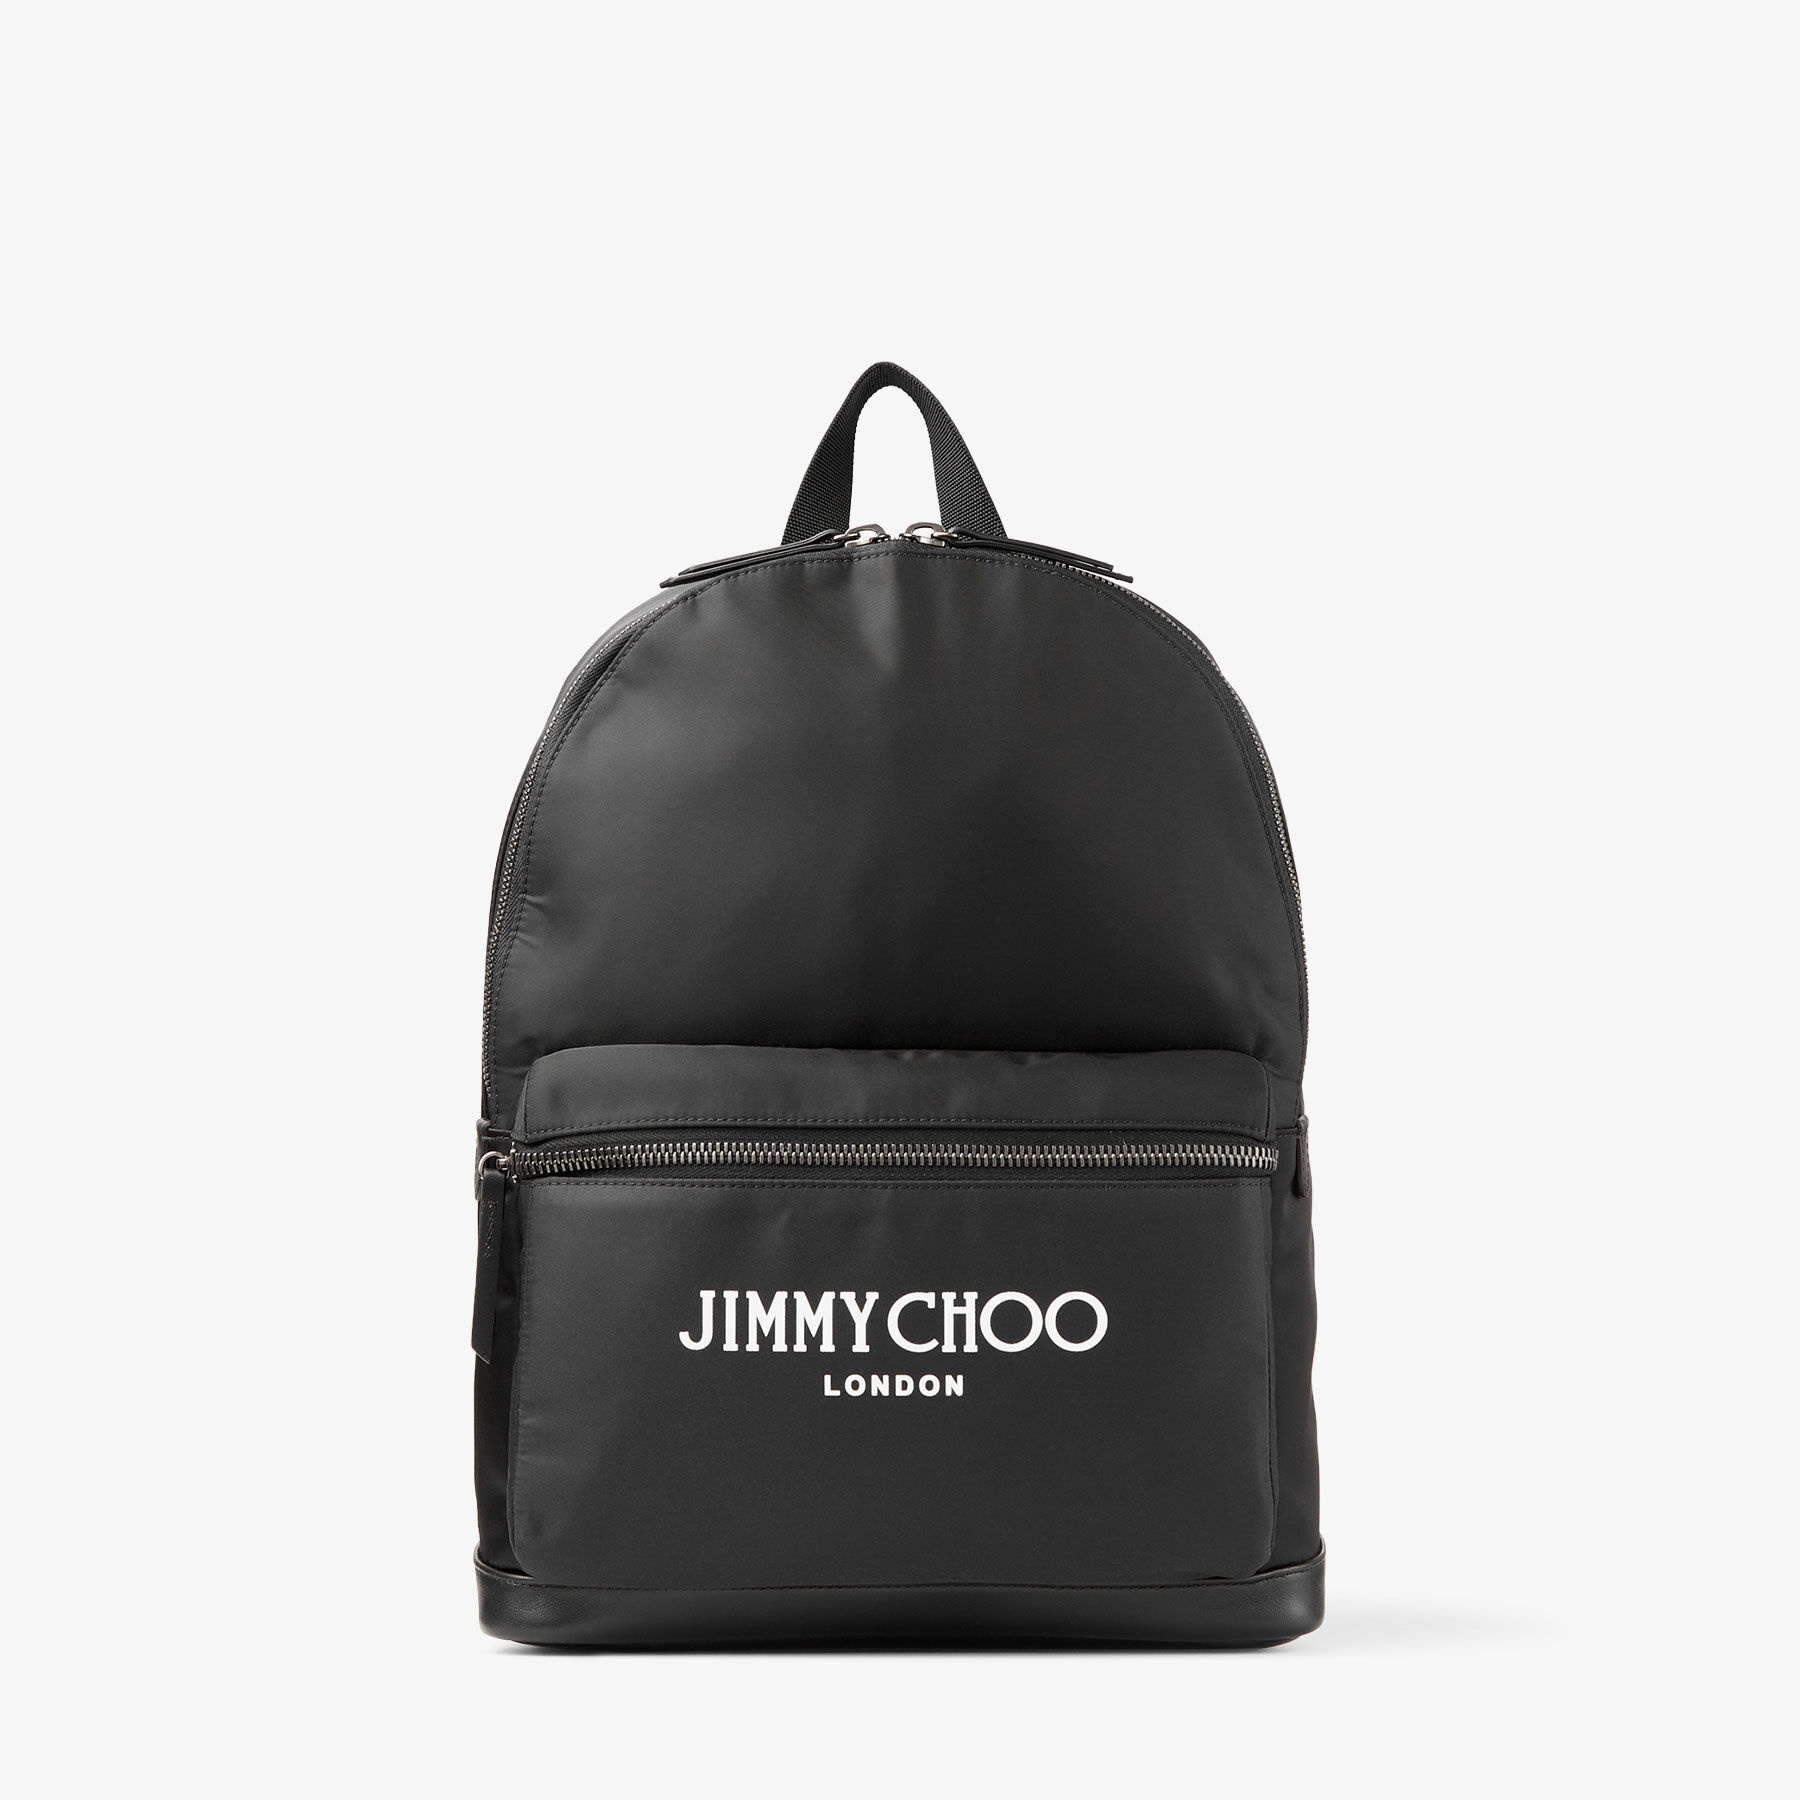 Wilmer
Black Nylon Backpack with Jimmy Choo Logo - 1